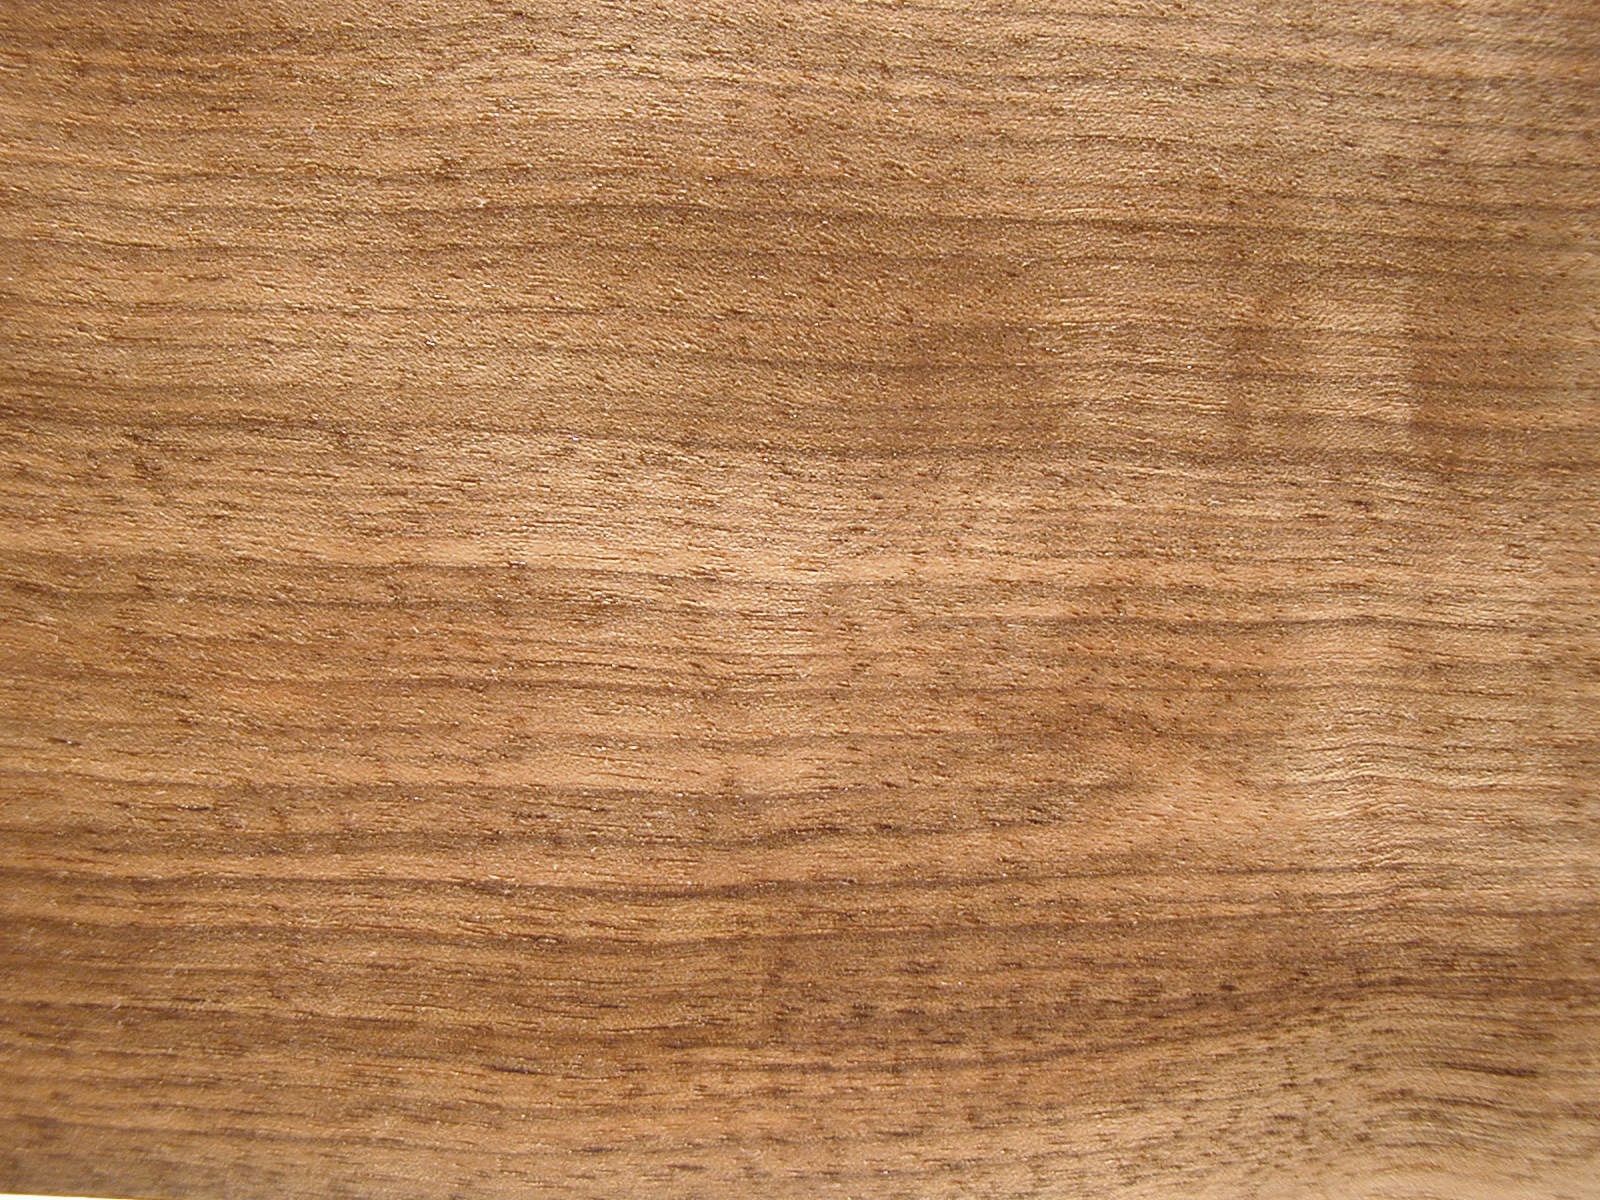 Walnut wood.